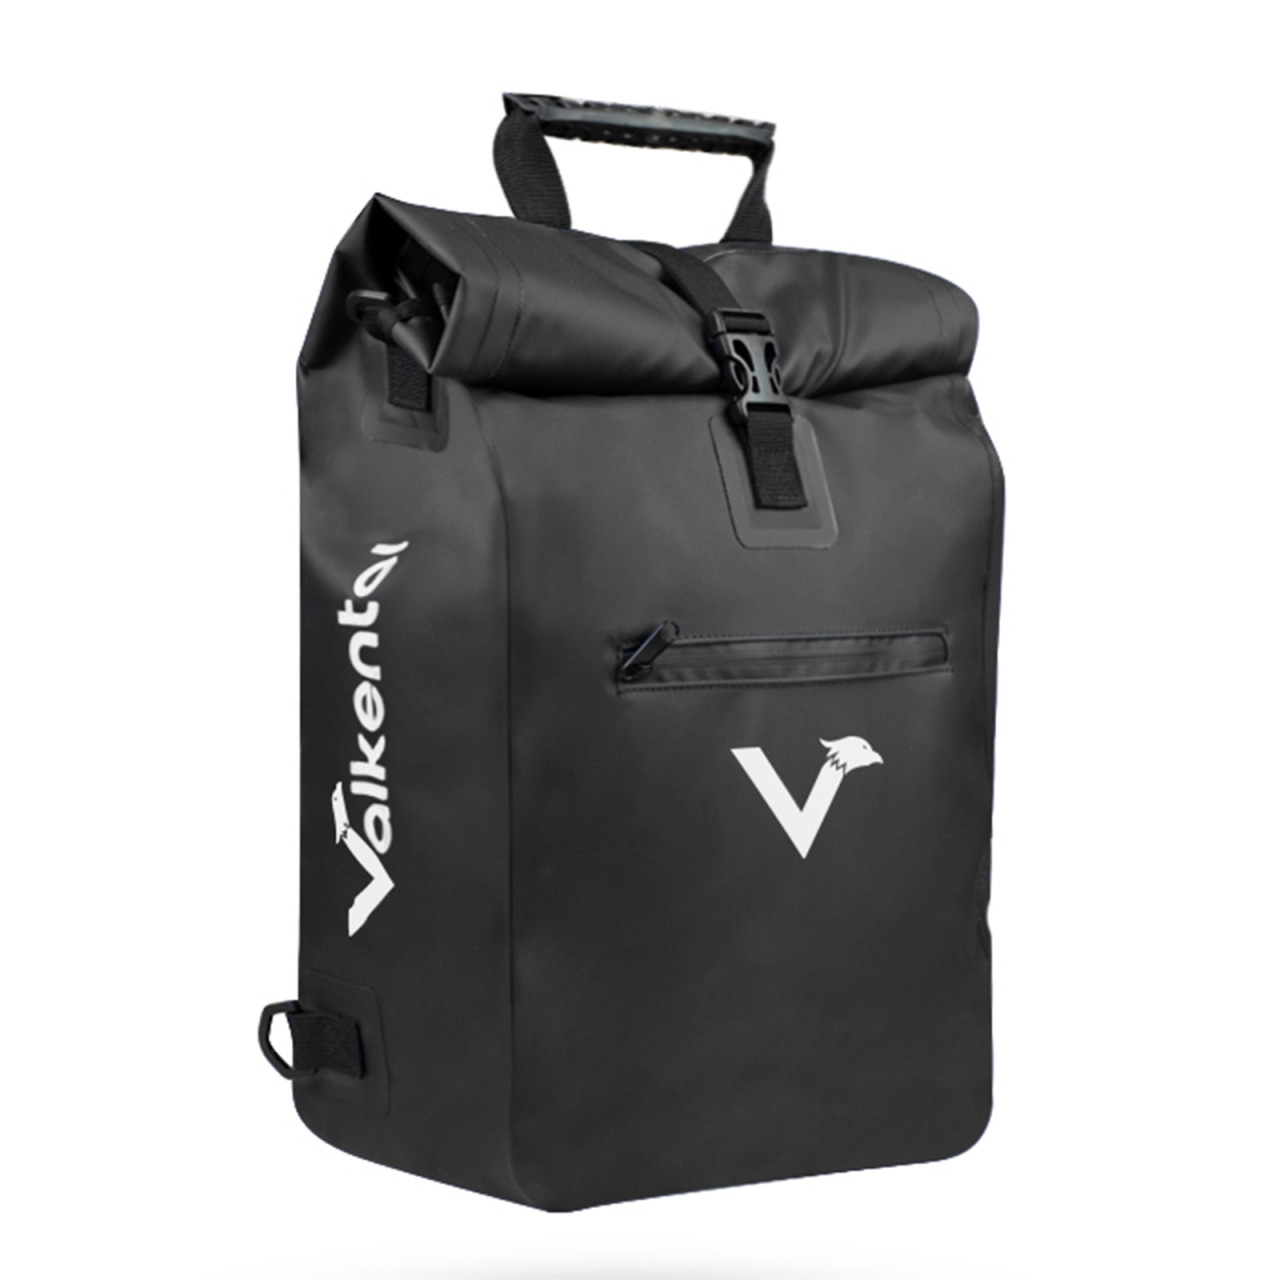 Valkental ValkPro 3in1 Fahrradtasche mit flexiblem Rücken und neuen Features